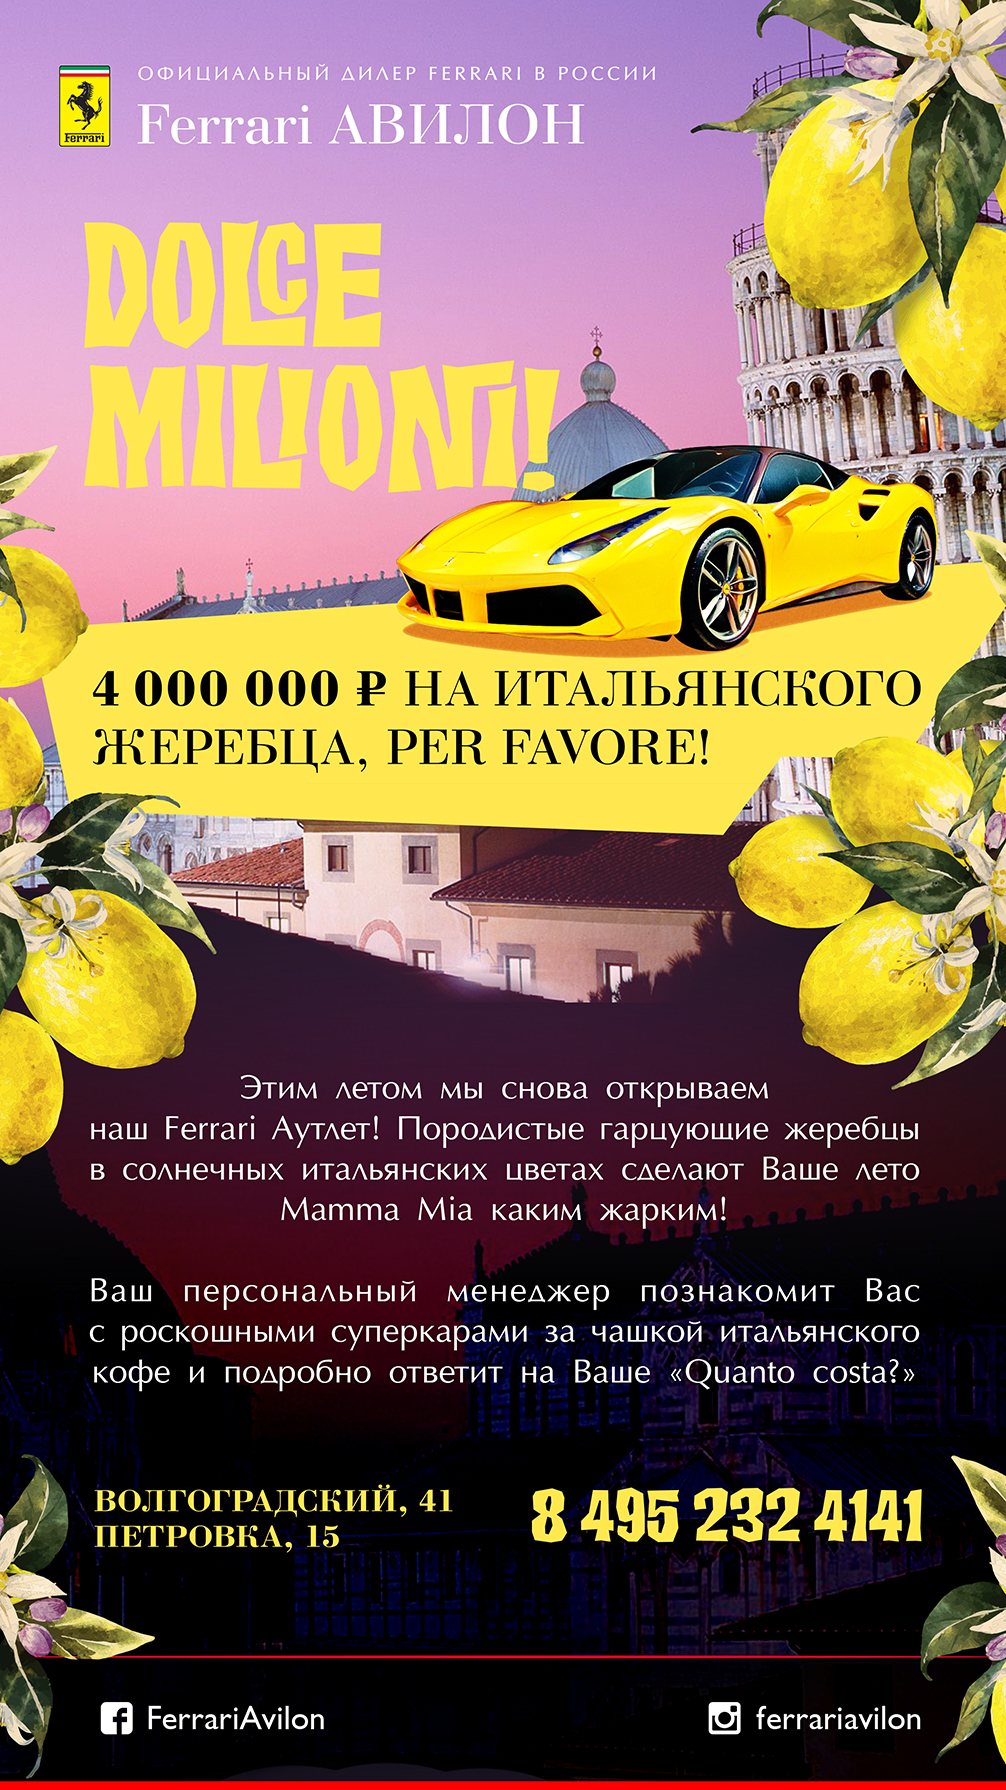 FERRARI newsletter lemon avilon automotive  